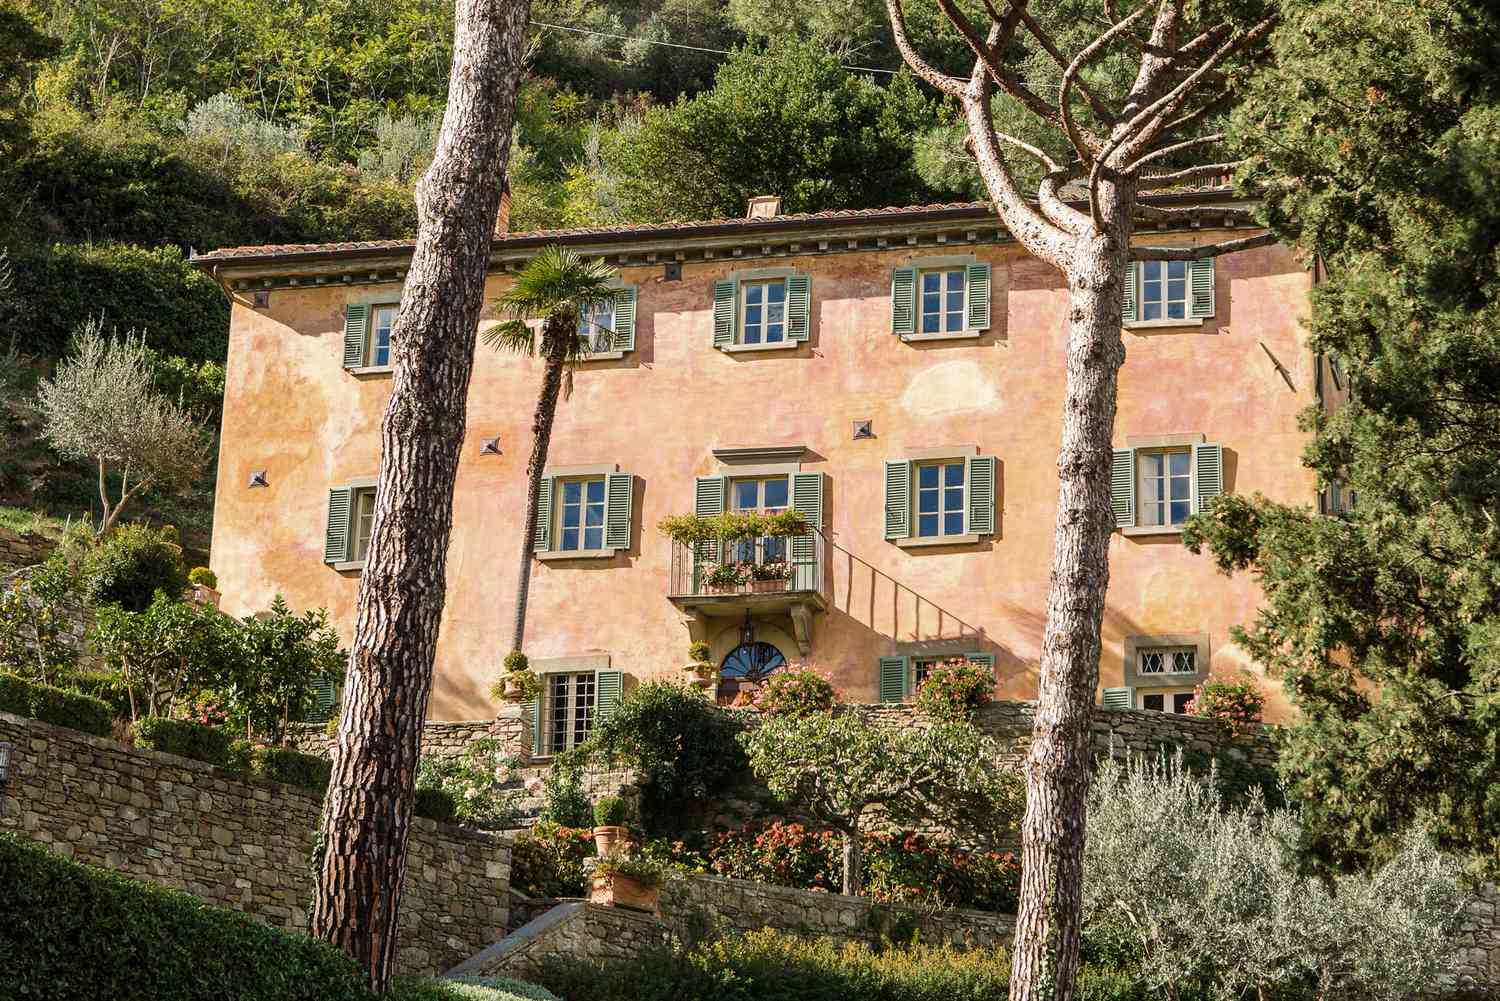 Casa de estilo rural francés con paredes de color terracota rodeadas de árboles y arbustos